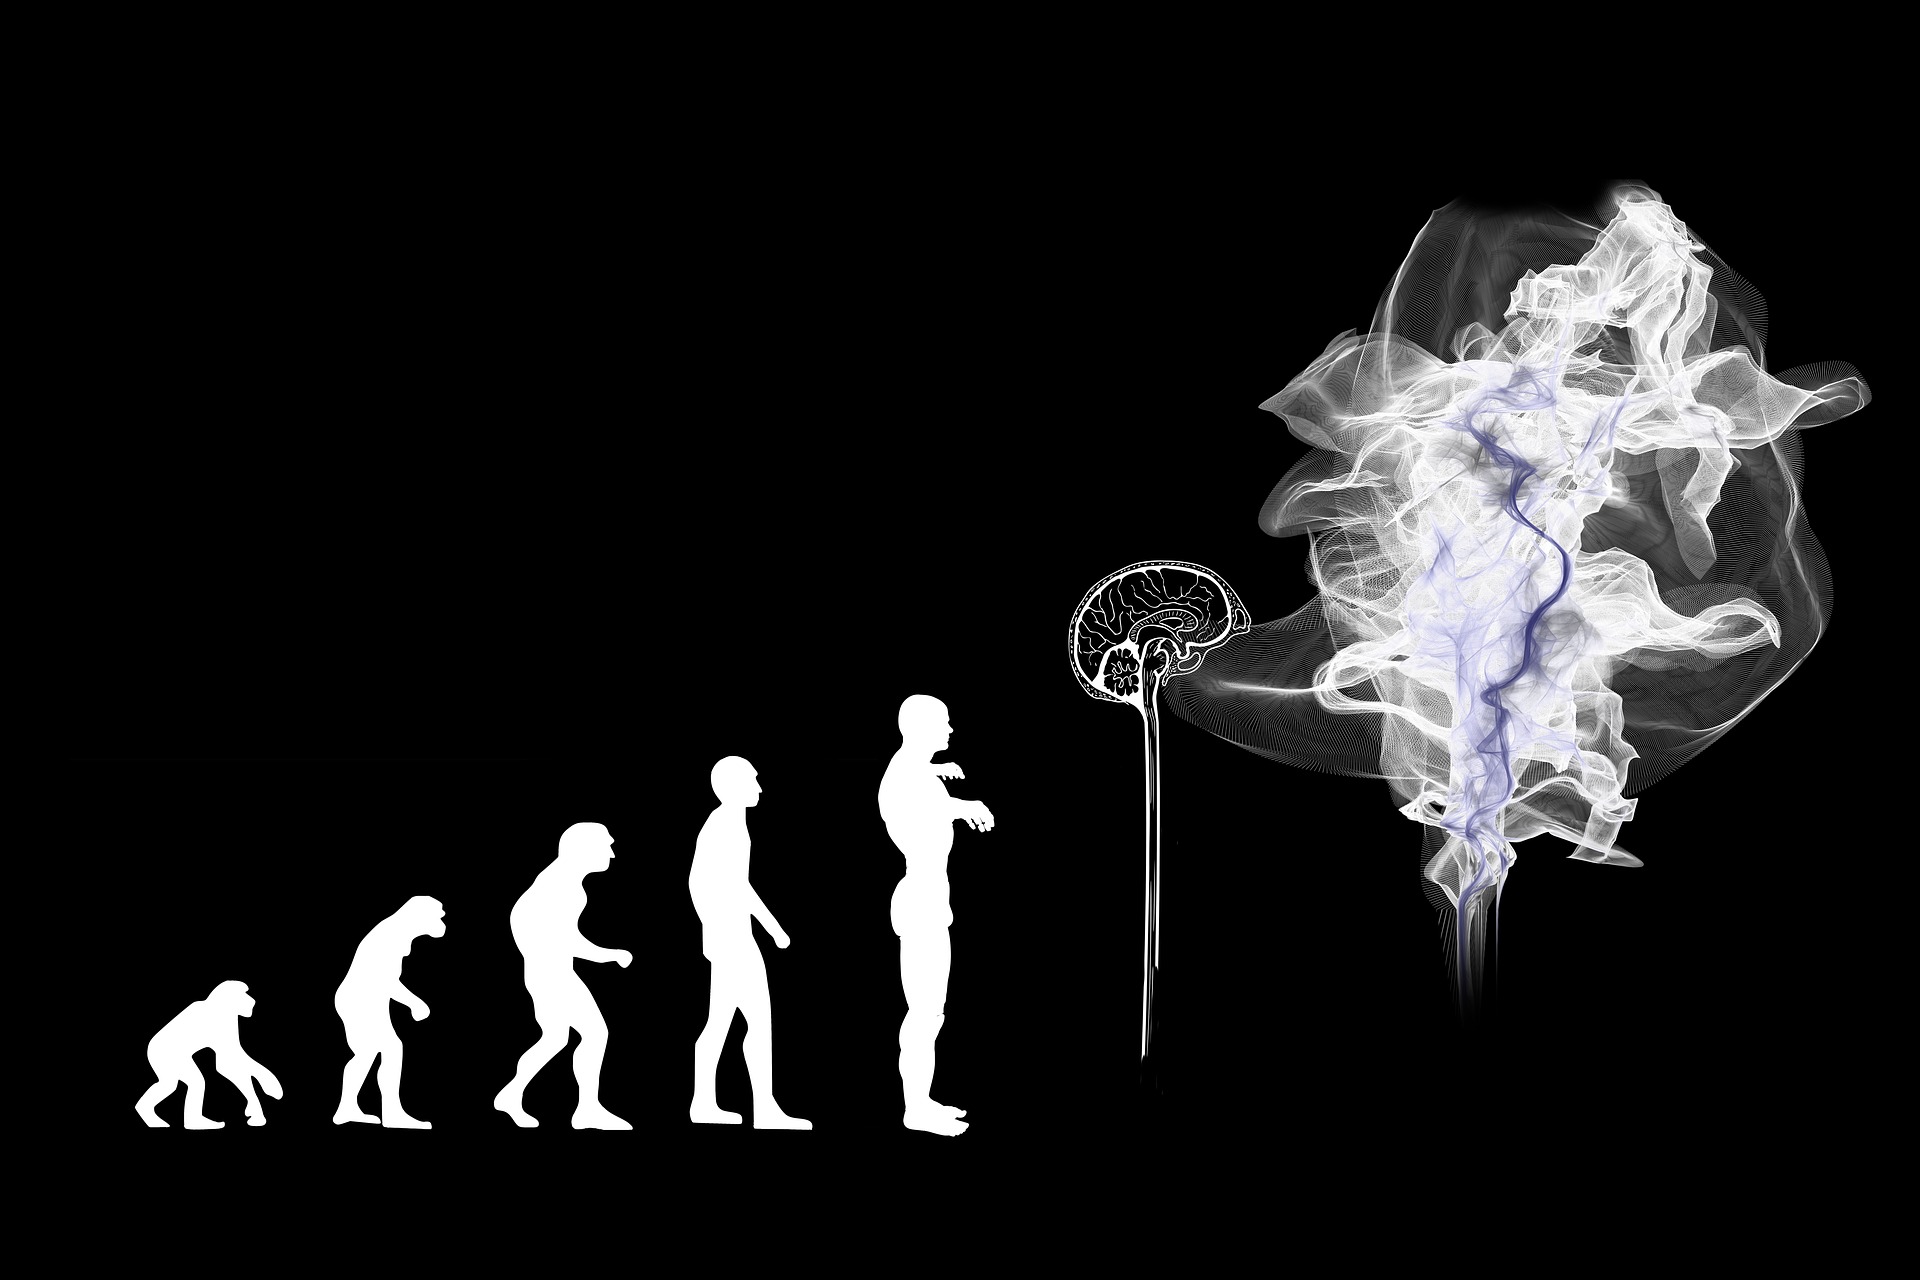 Grafika ewolucji człowiek aod małpy do mózgu w chmurze